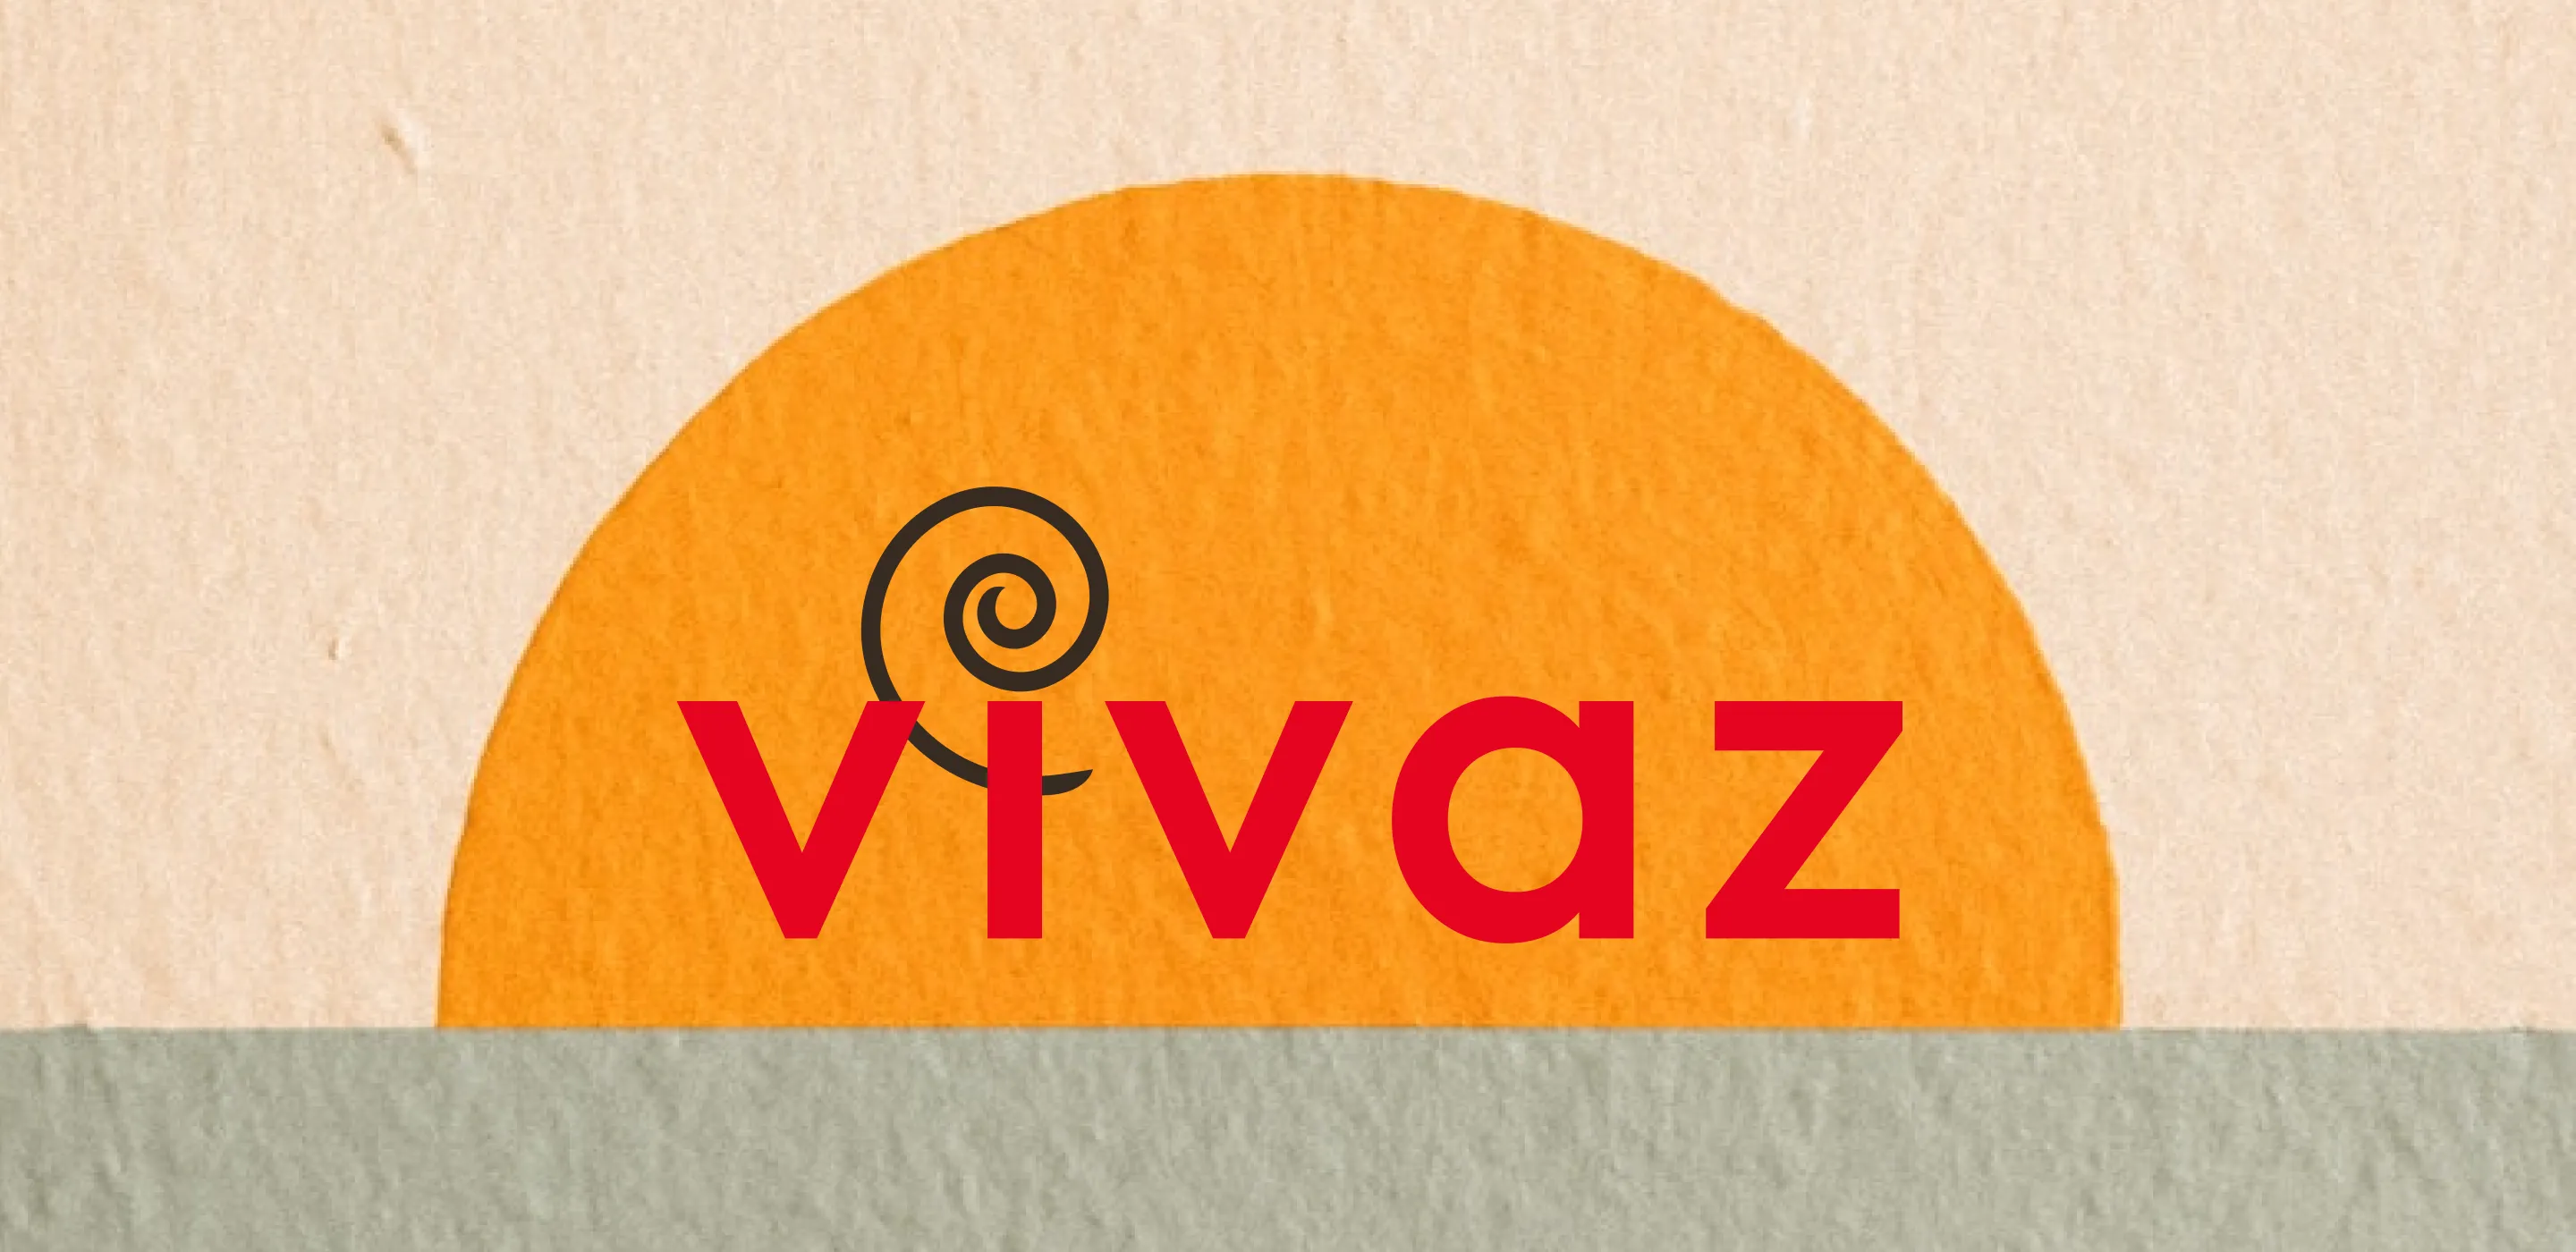 Marketing afbeelding met visuals van de website vivaz.nl